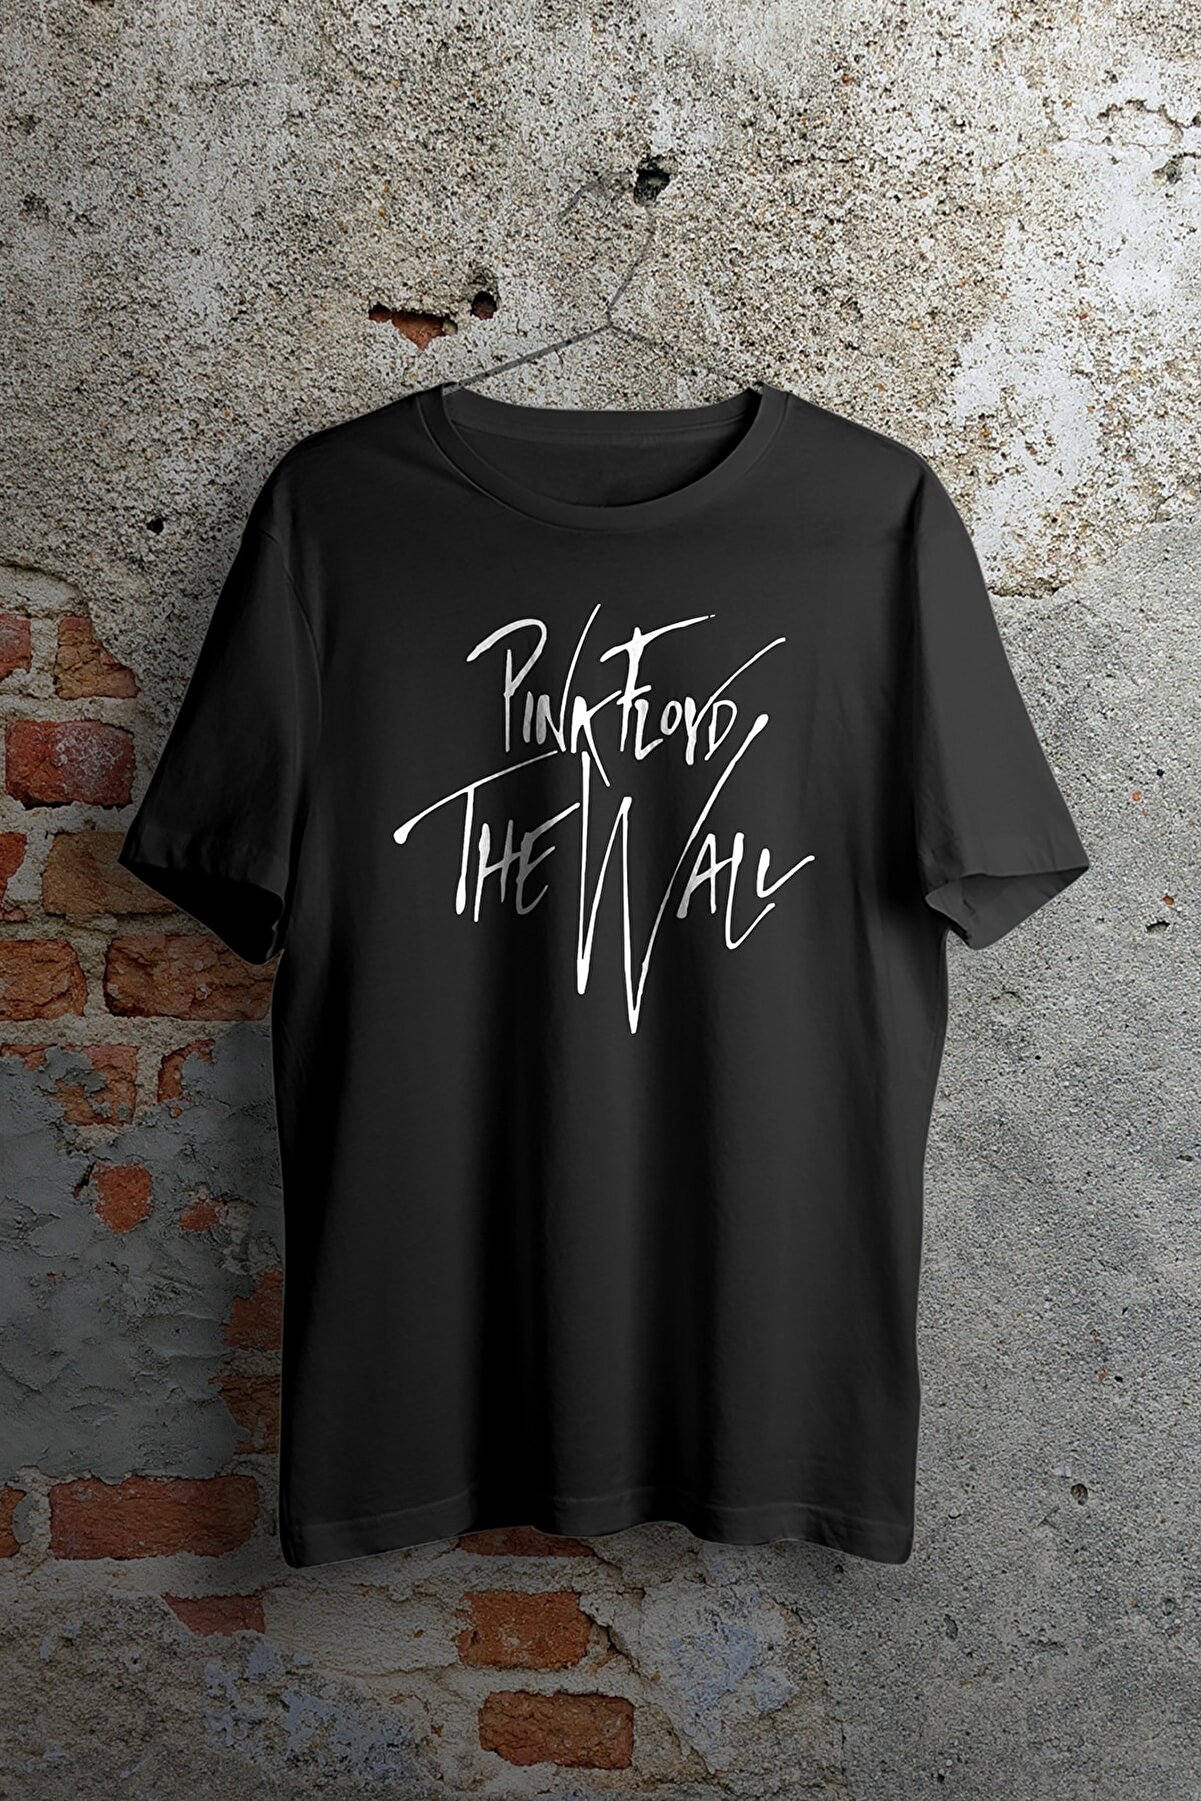 WePOD Netstyle Pink Floyd Signature Siyah Unisex Tshirt